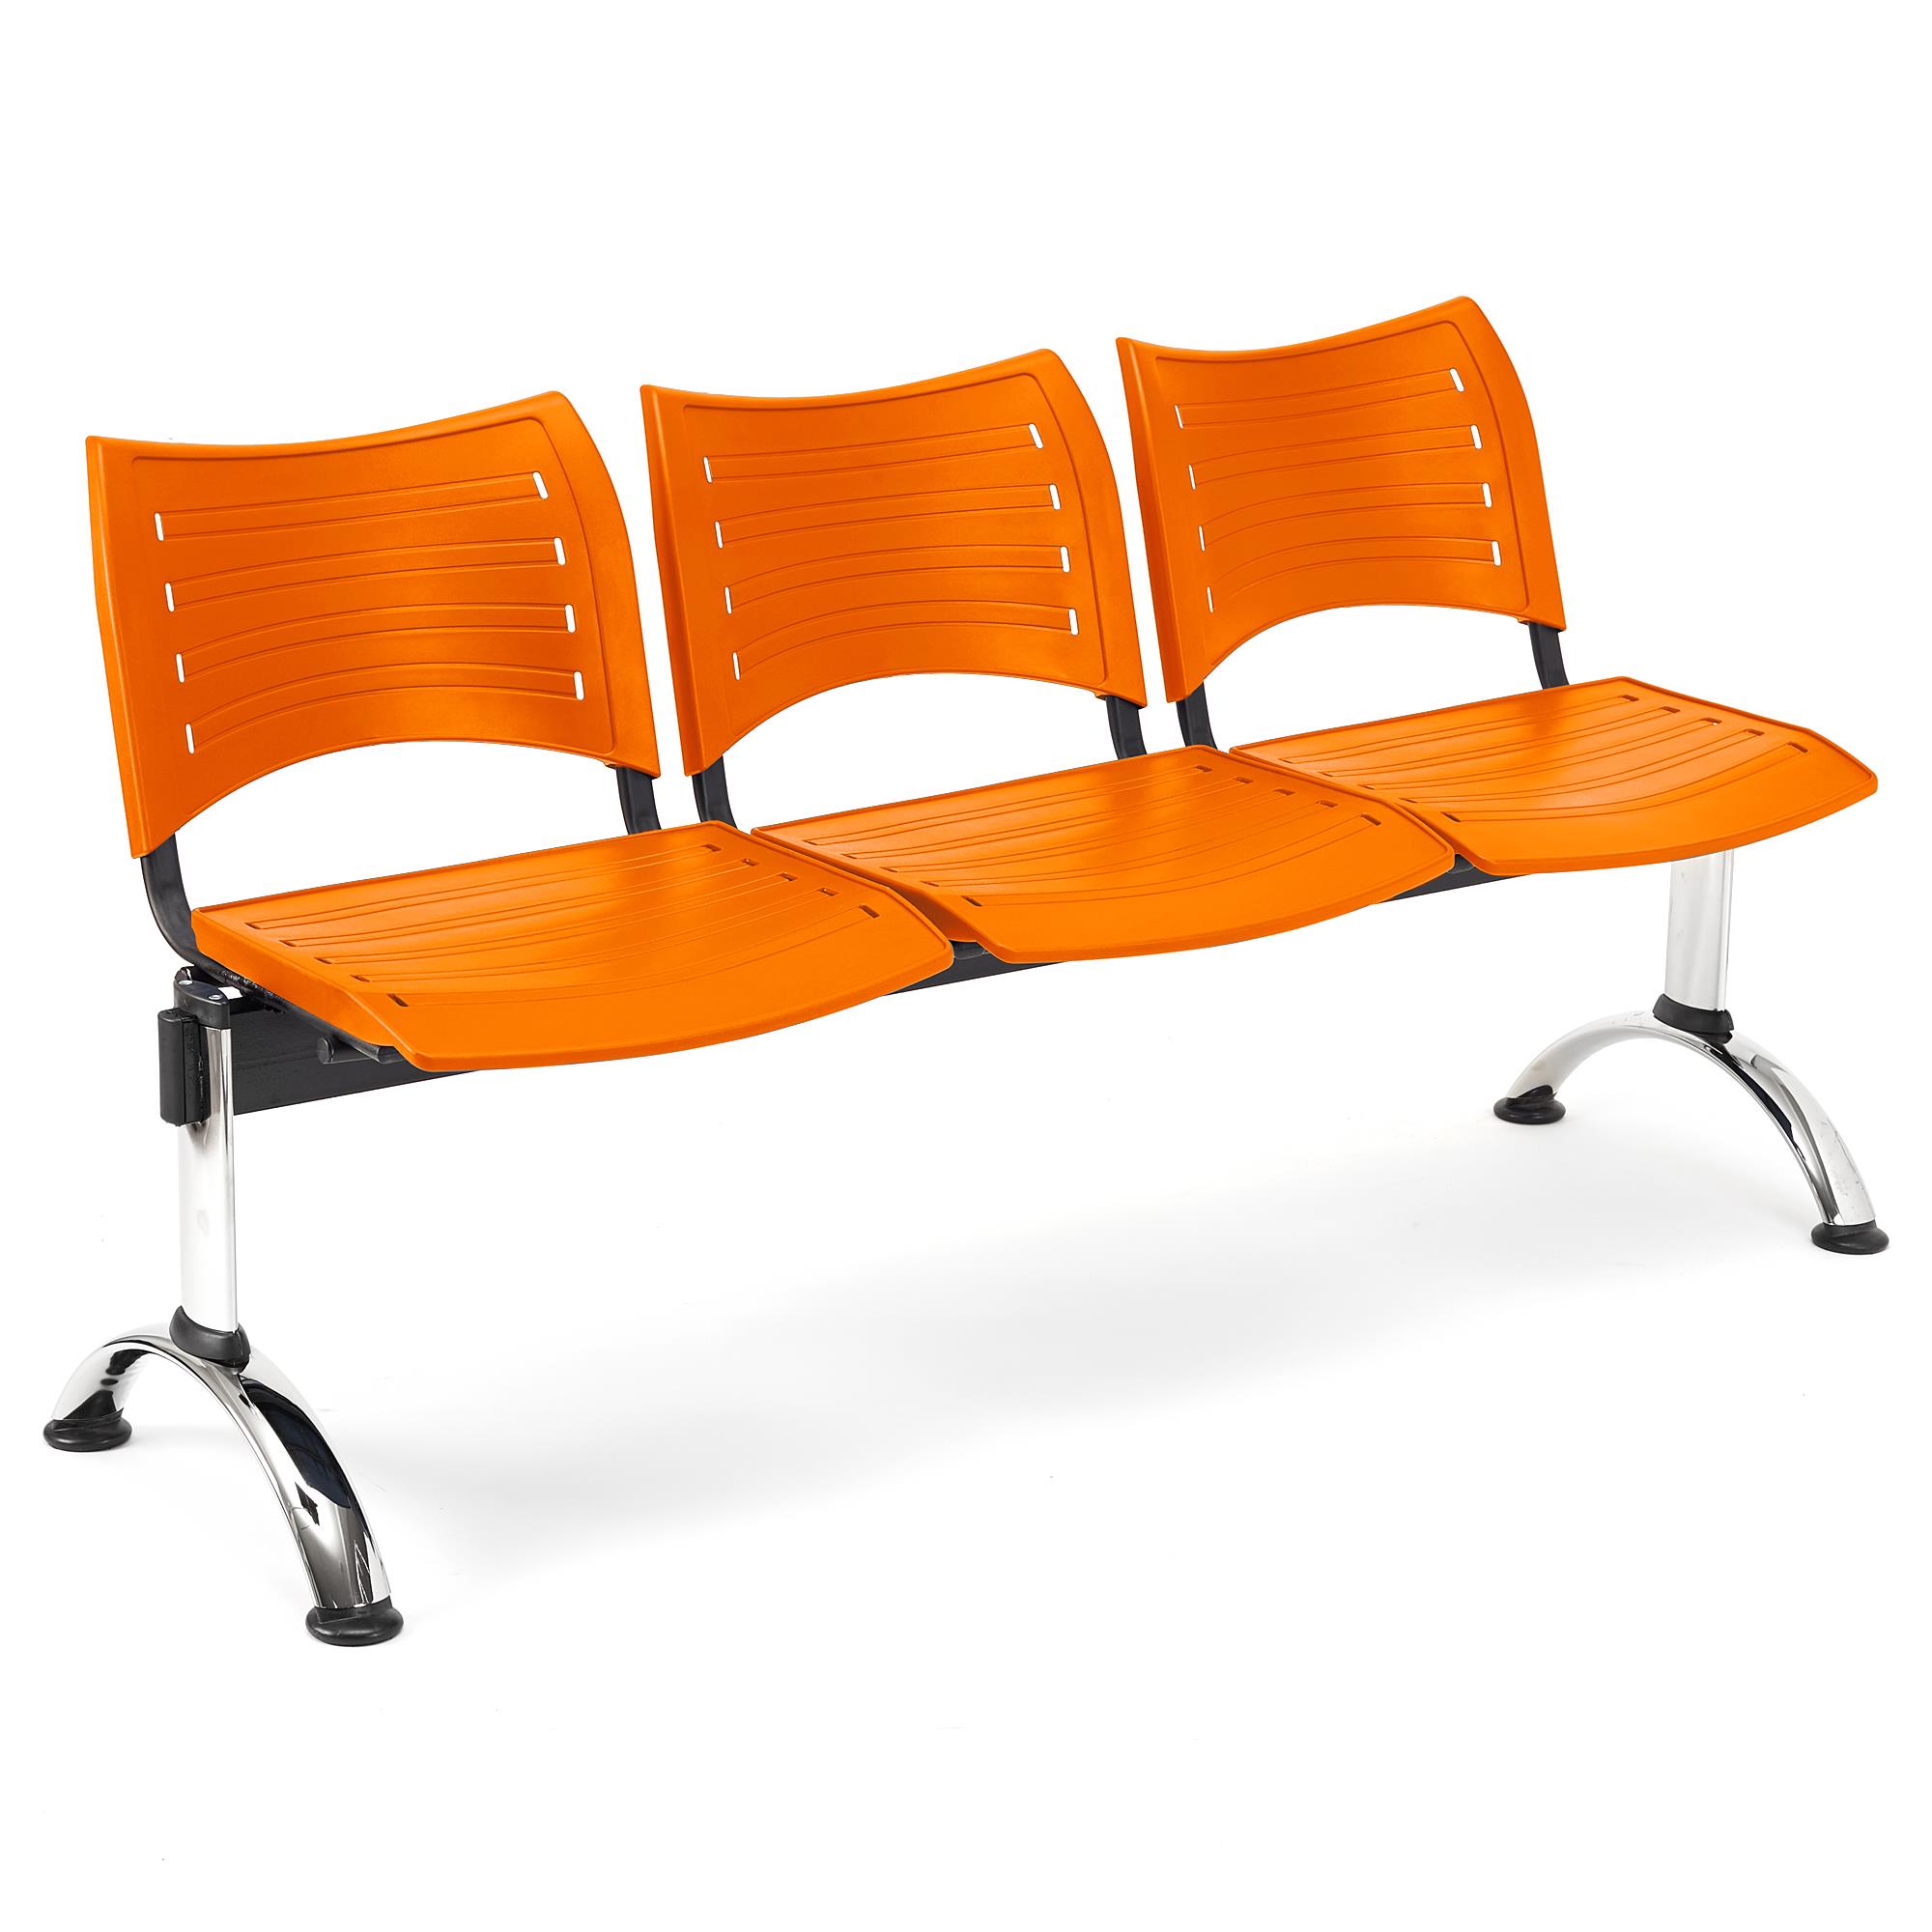 Banc salle d'attente 3 sièges ELVA, Structure en Métal, Plastique Orange